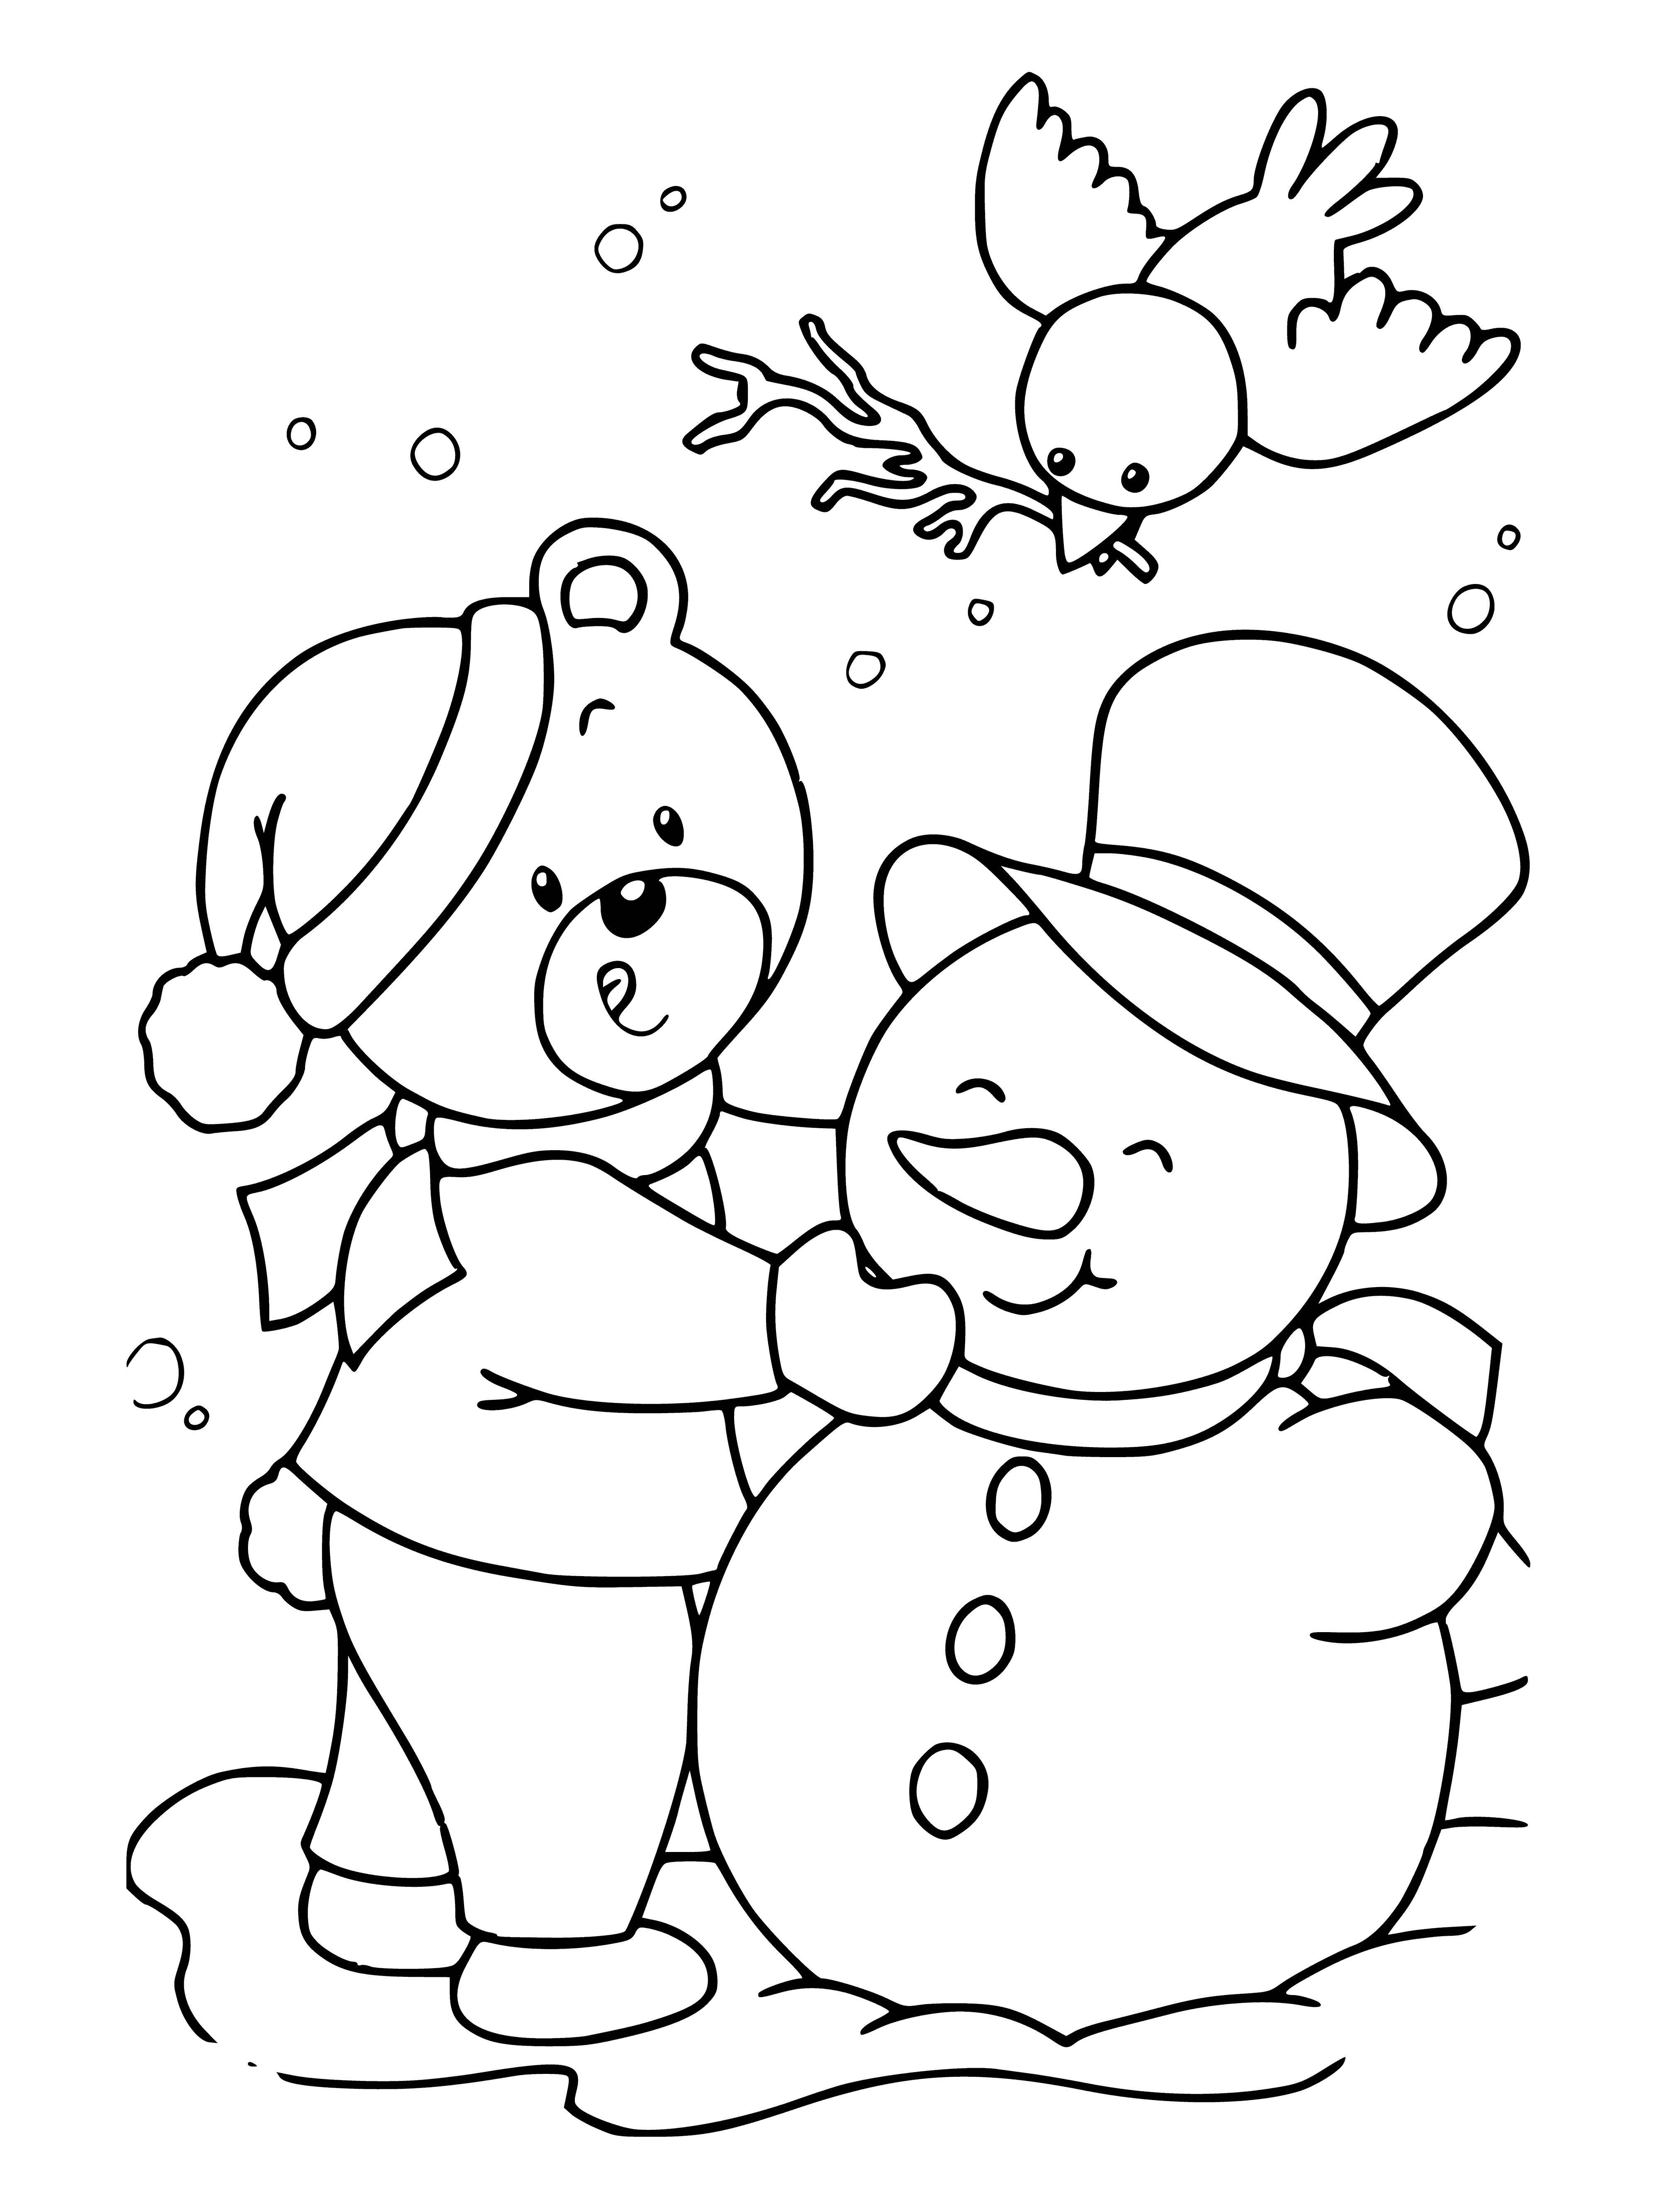 Urso de pelúcia esculpe um boneco de neve página para colorir